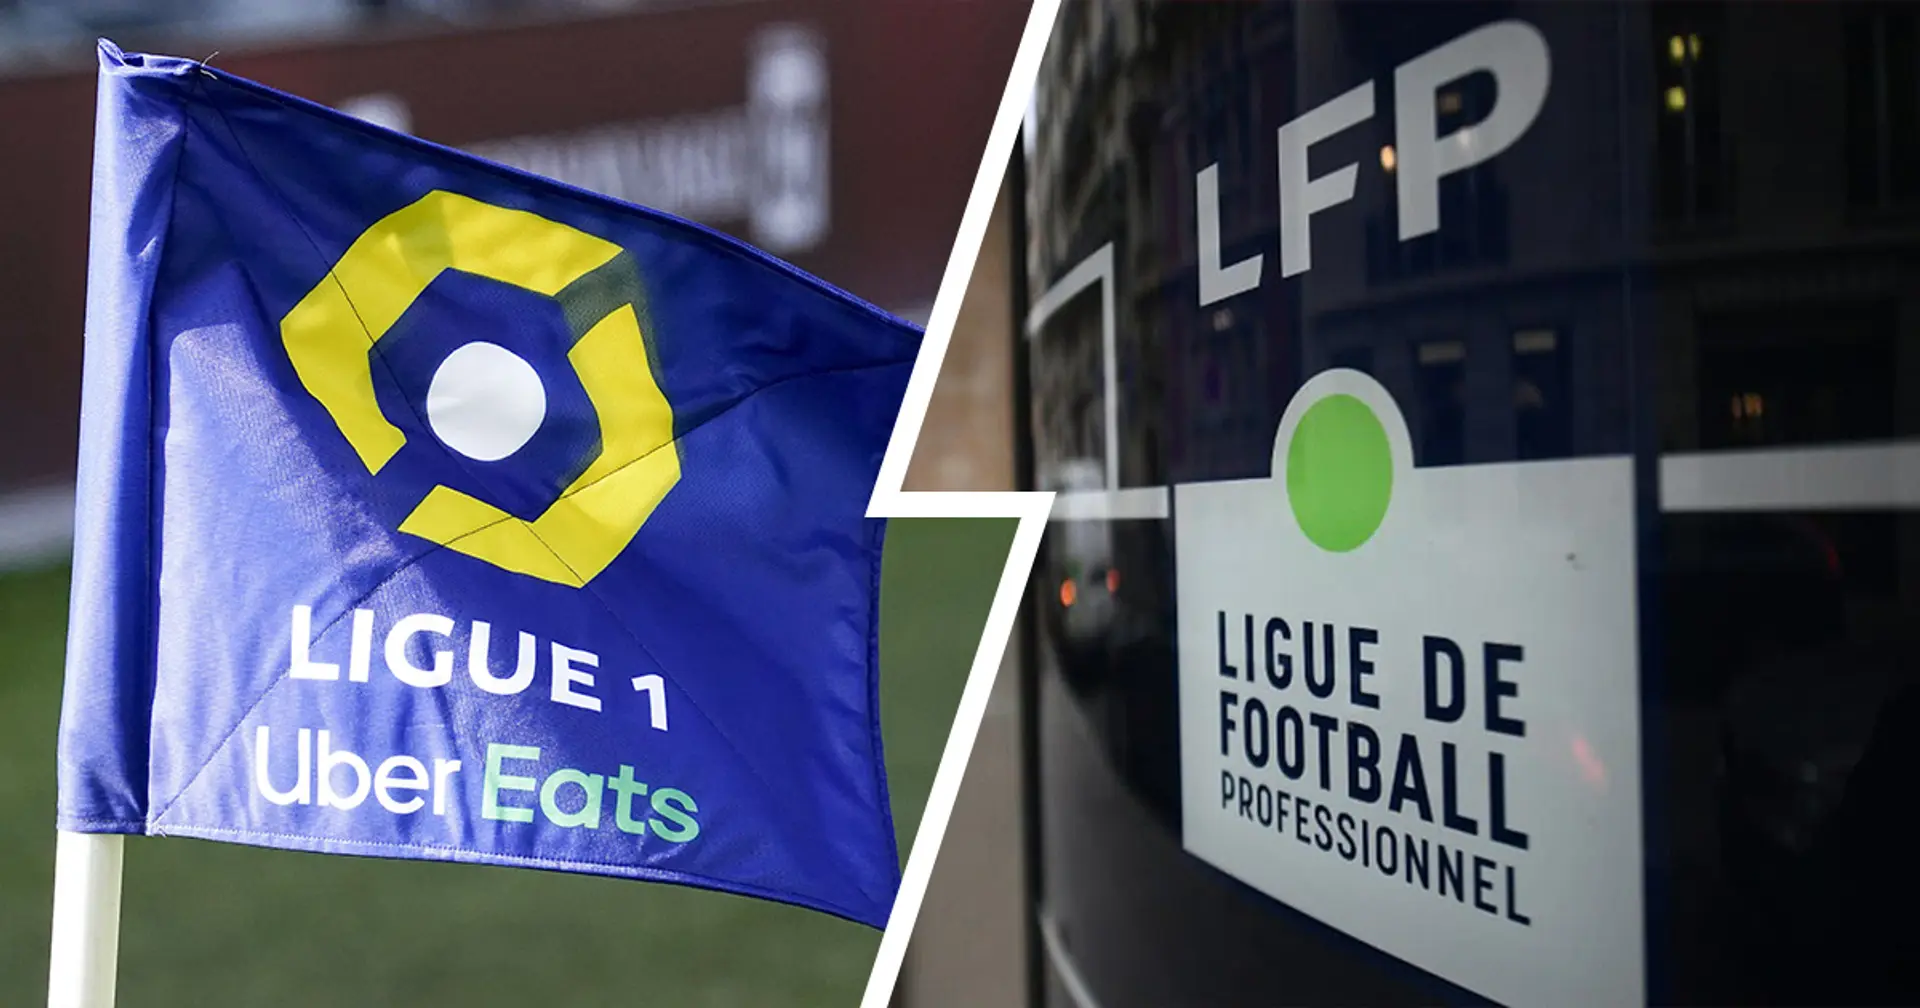 ⚡ OFFICIEL: La Ligue 1 sera jouée à 18 clubs à compter de la saison 2023-24